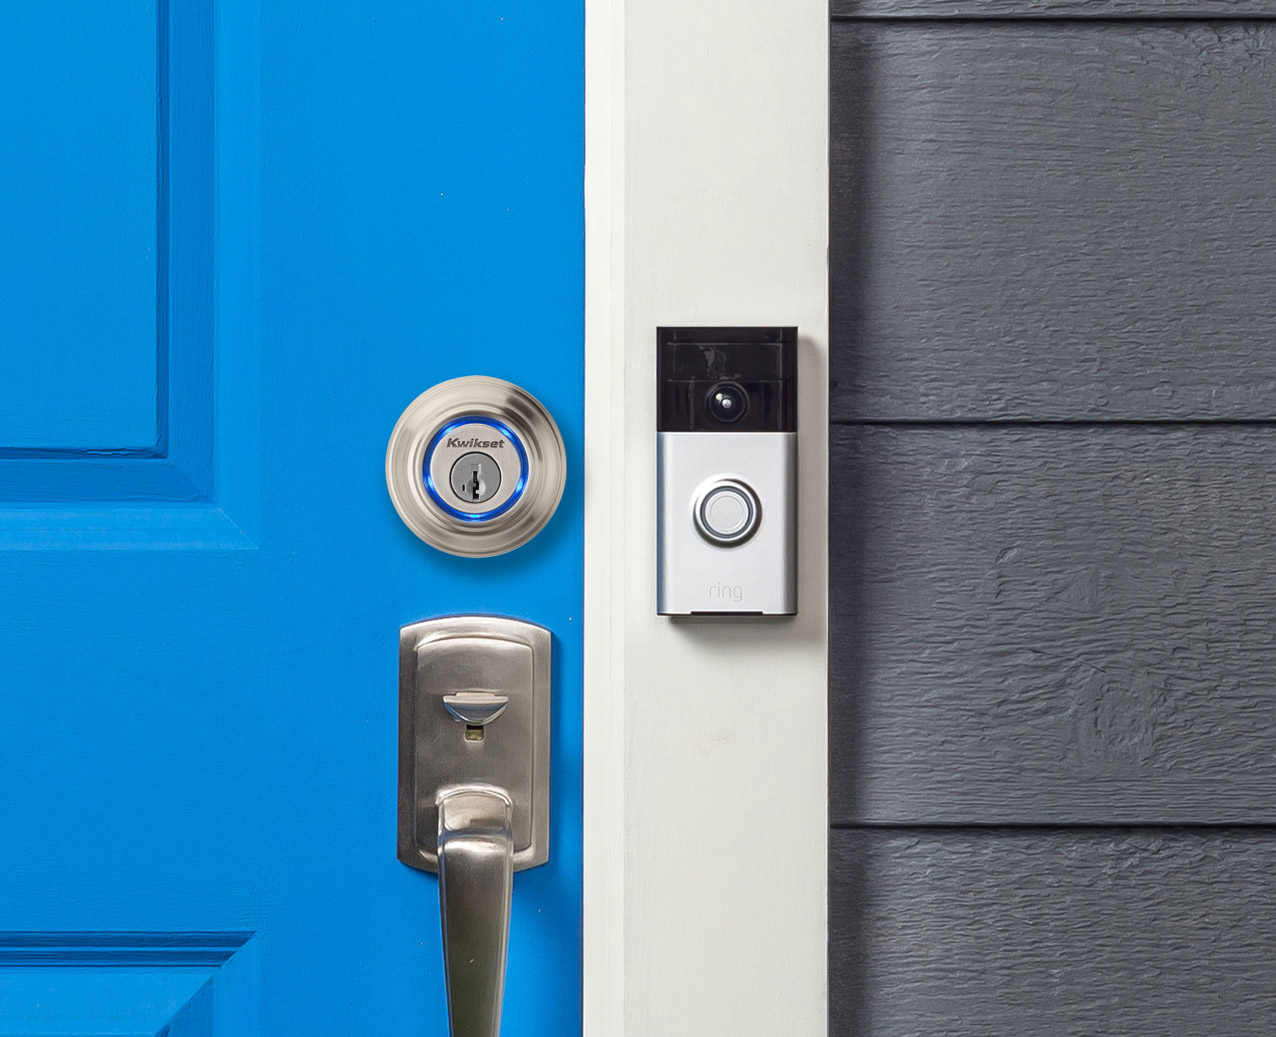 Kwikset Kevo Smart Lock Now Works With Ring Video Doorbell Kwikset